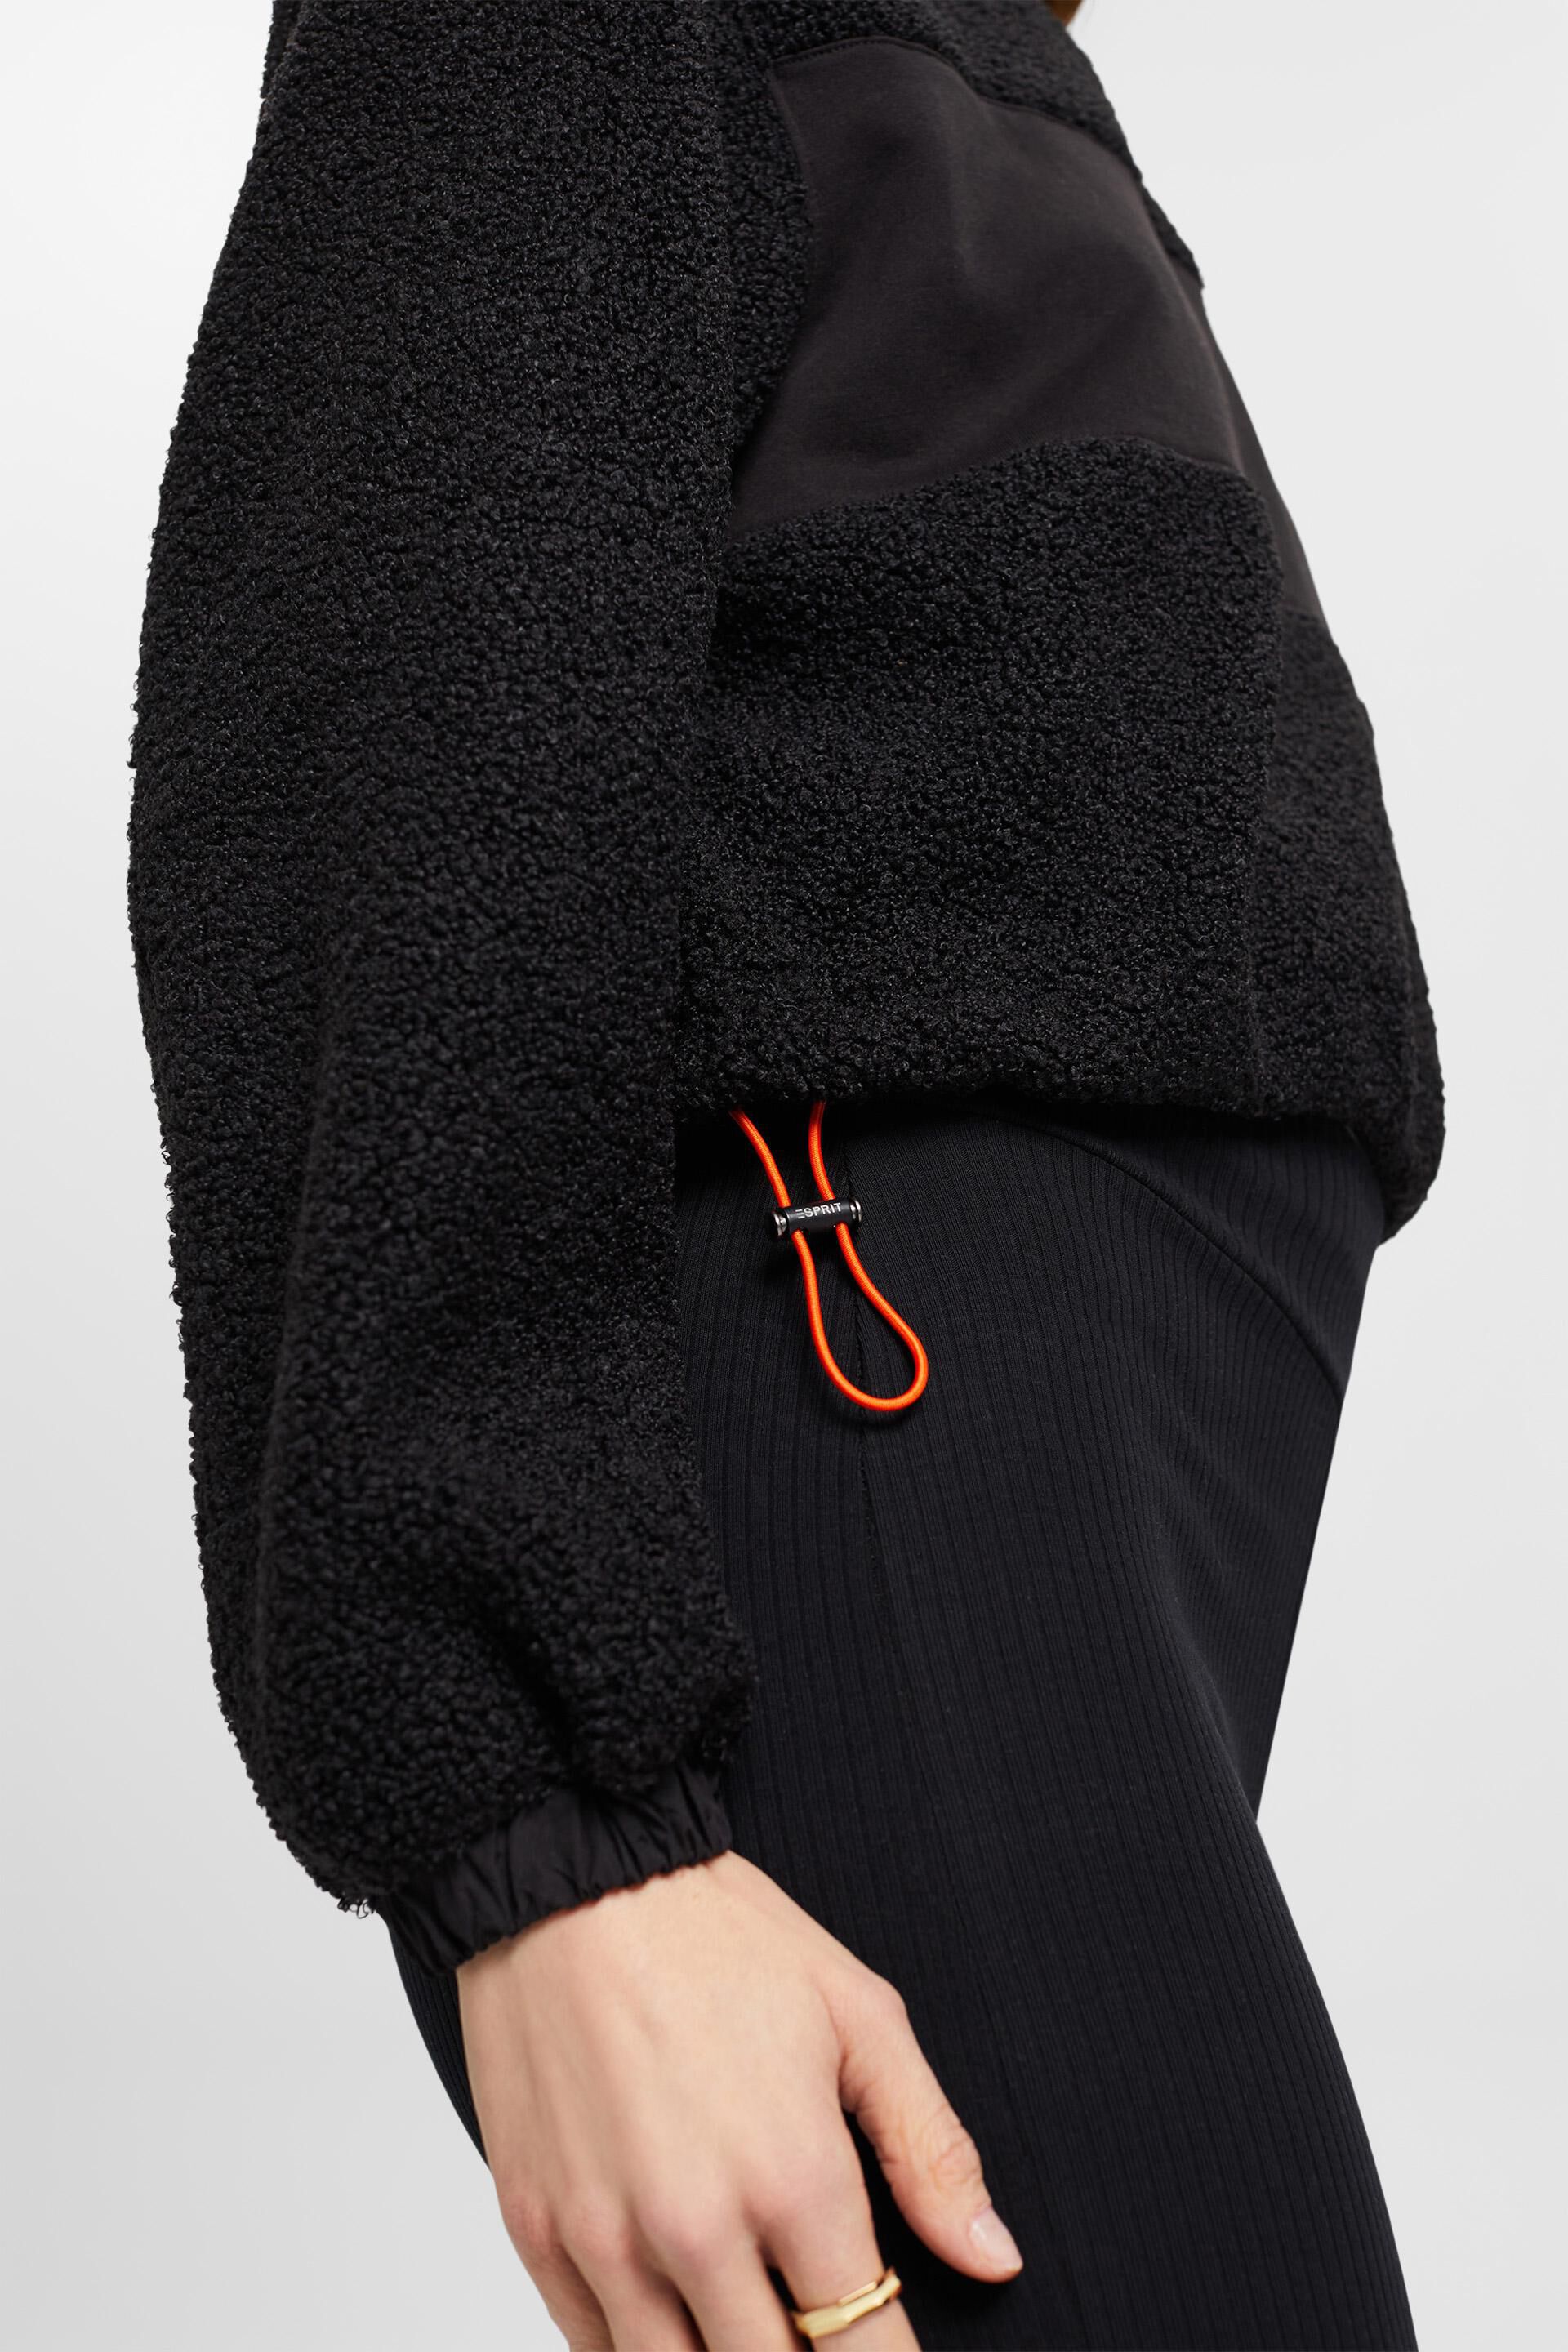 Esprit Sweatshirt gemischtem mit Reißverschluss Material halbem aus